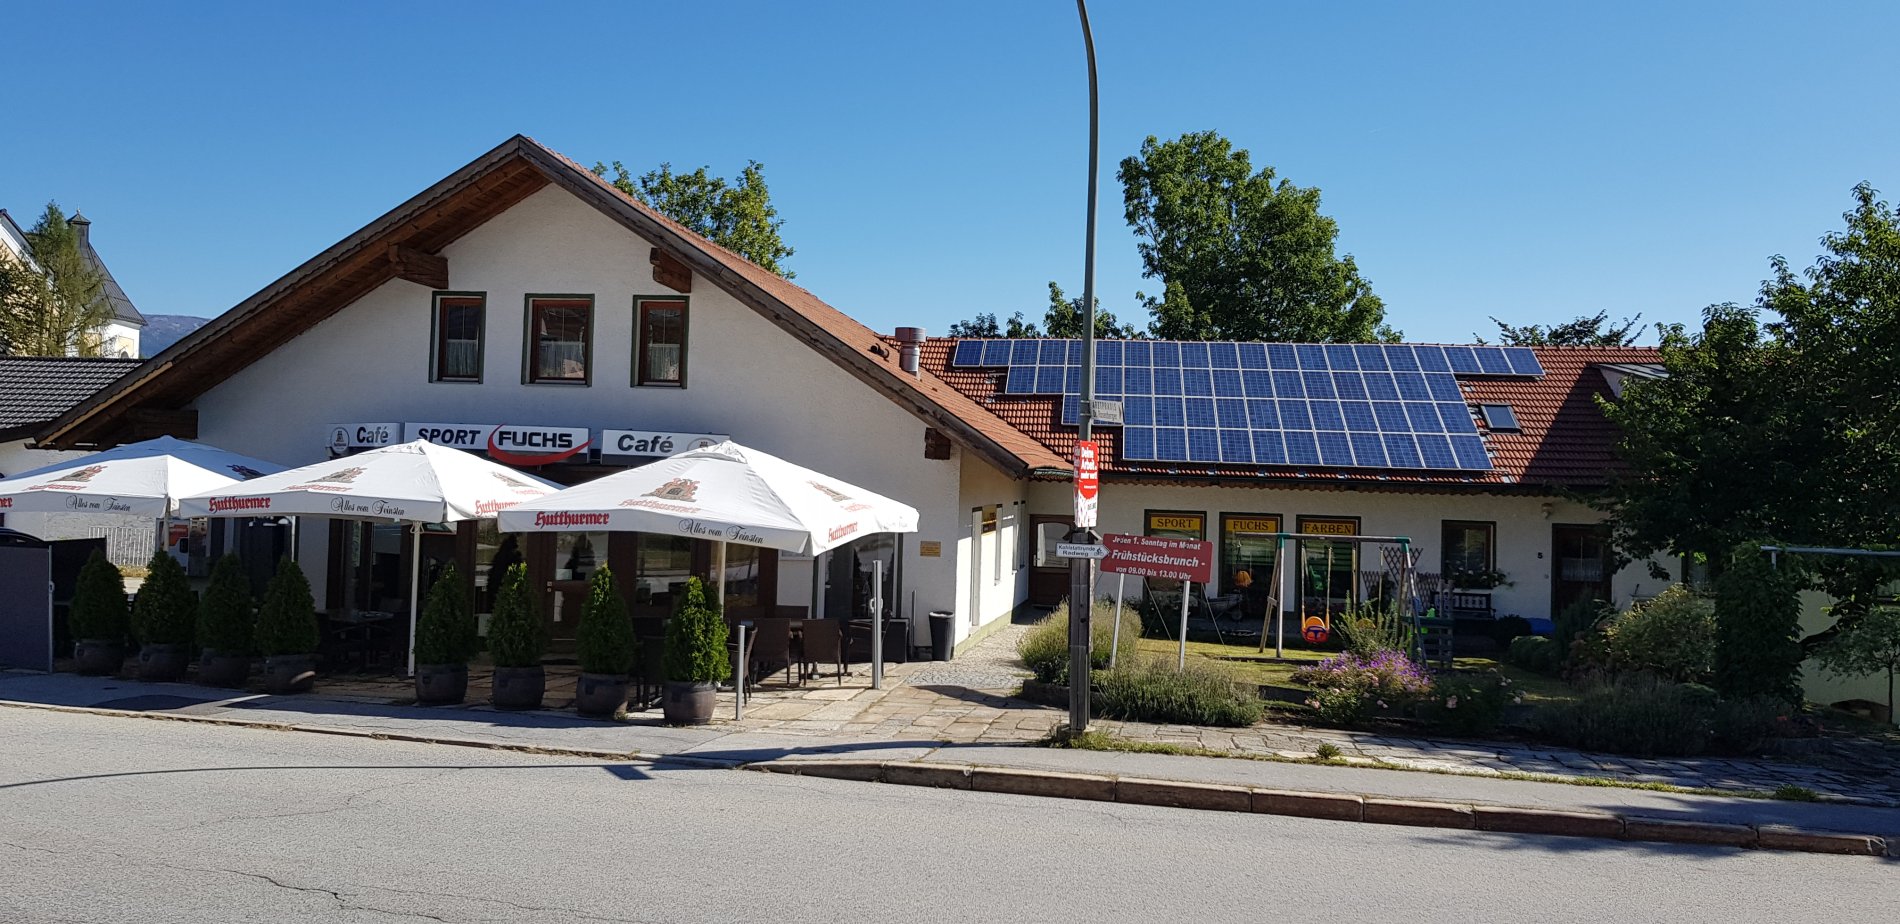 Café und Sport Fuchs in Breitenberg